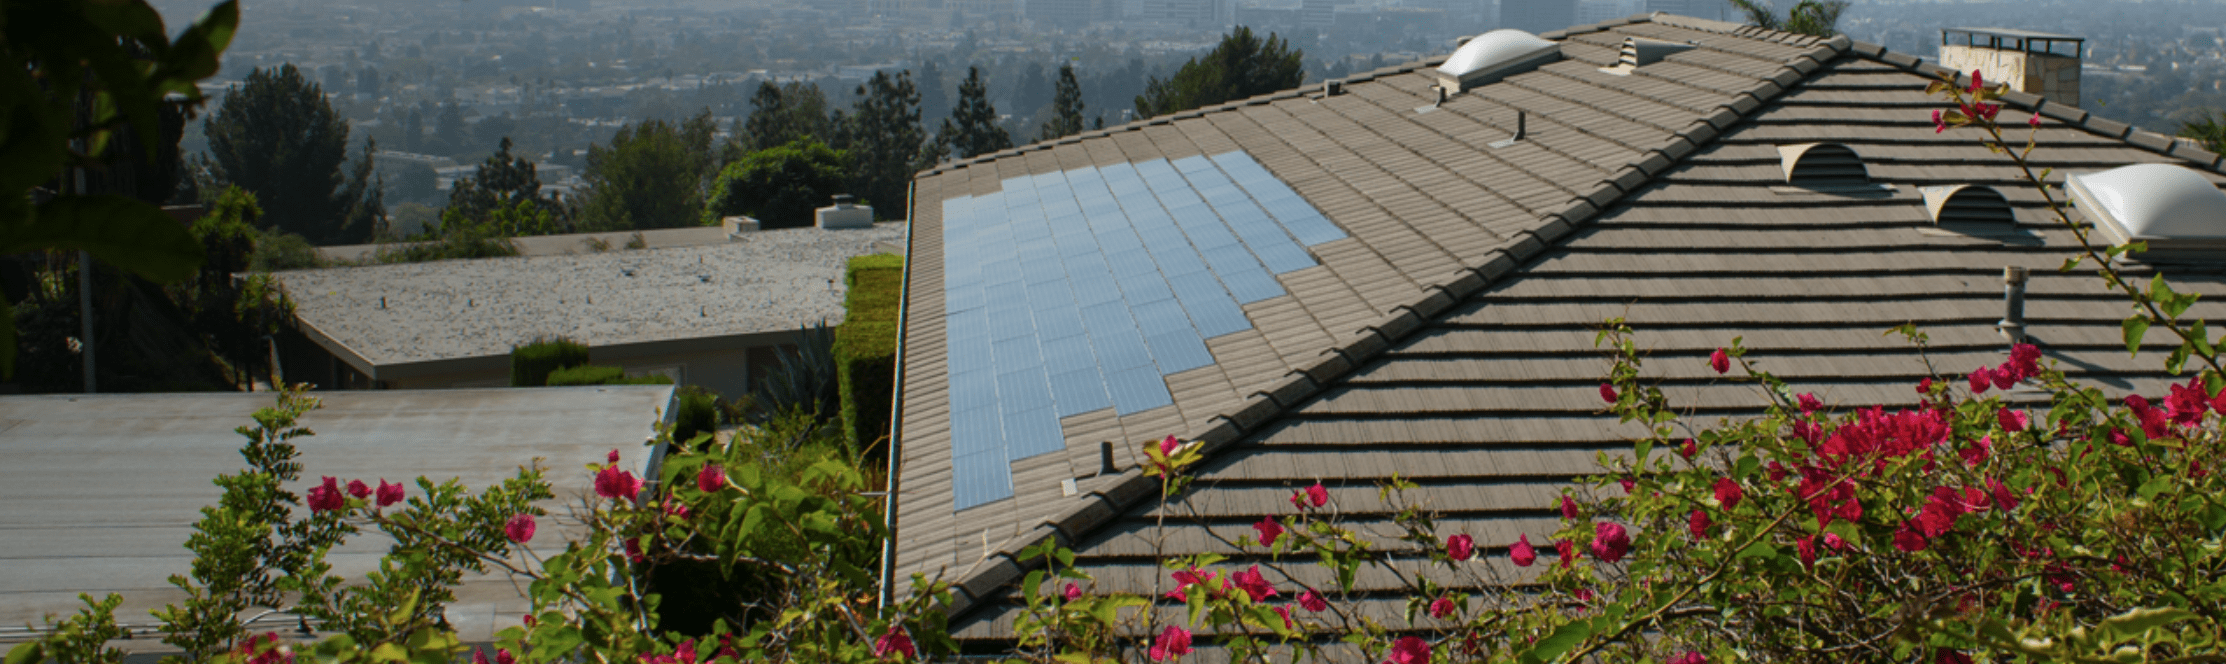 SunTegra Solar Roof Tiles